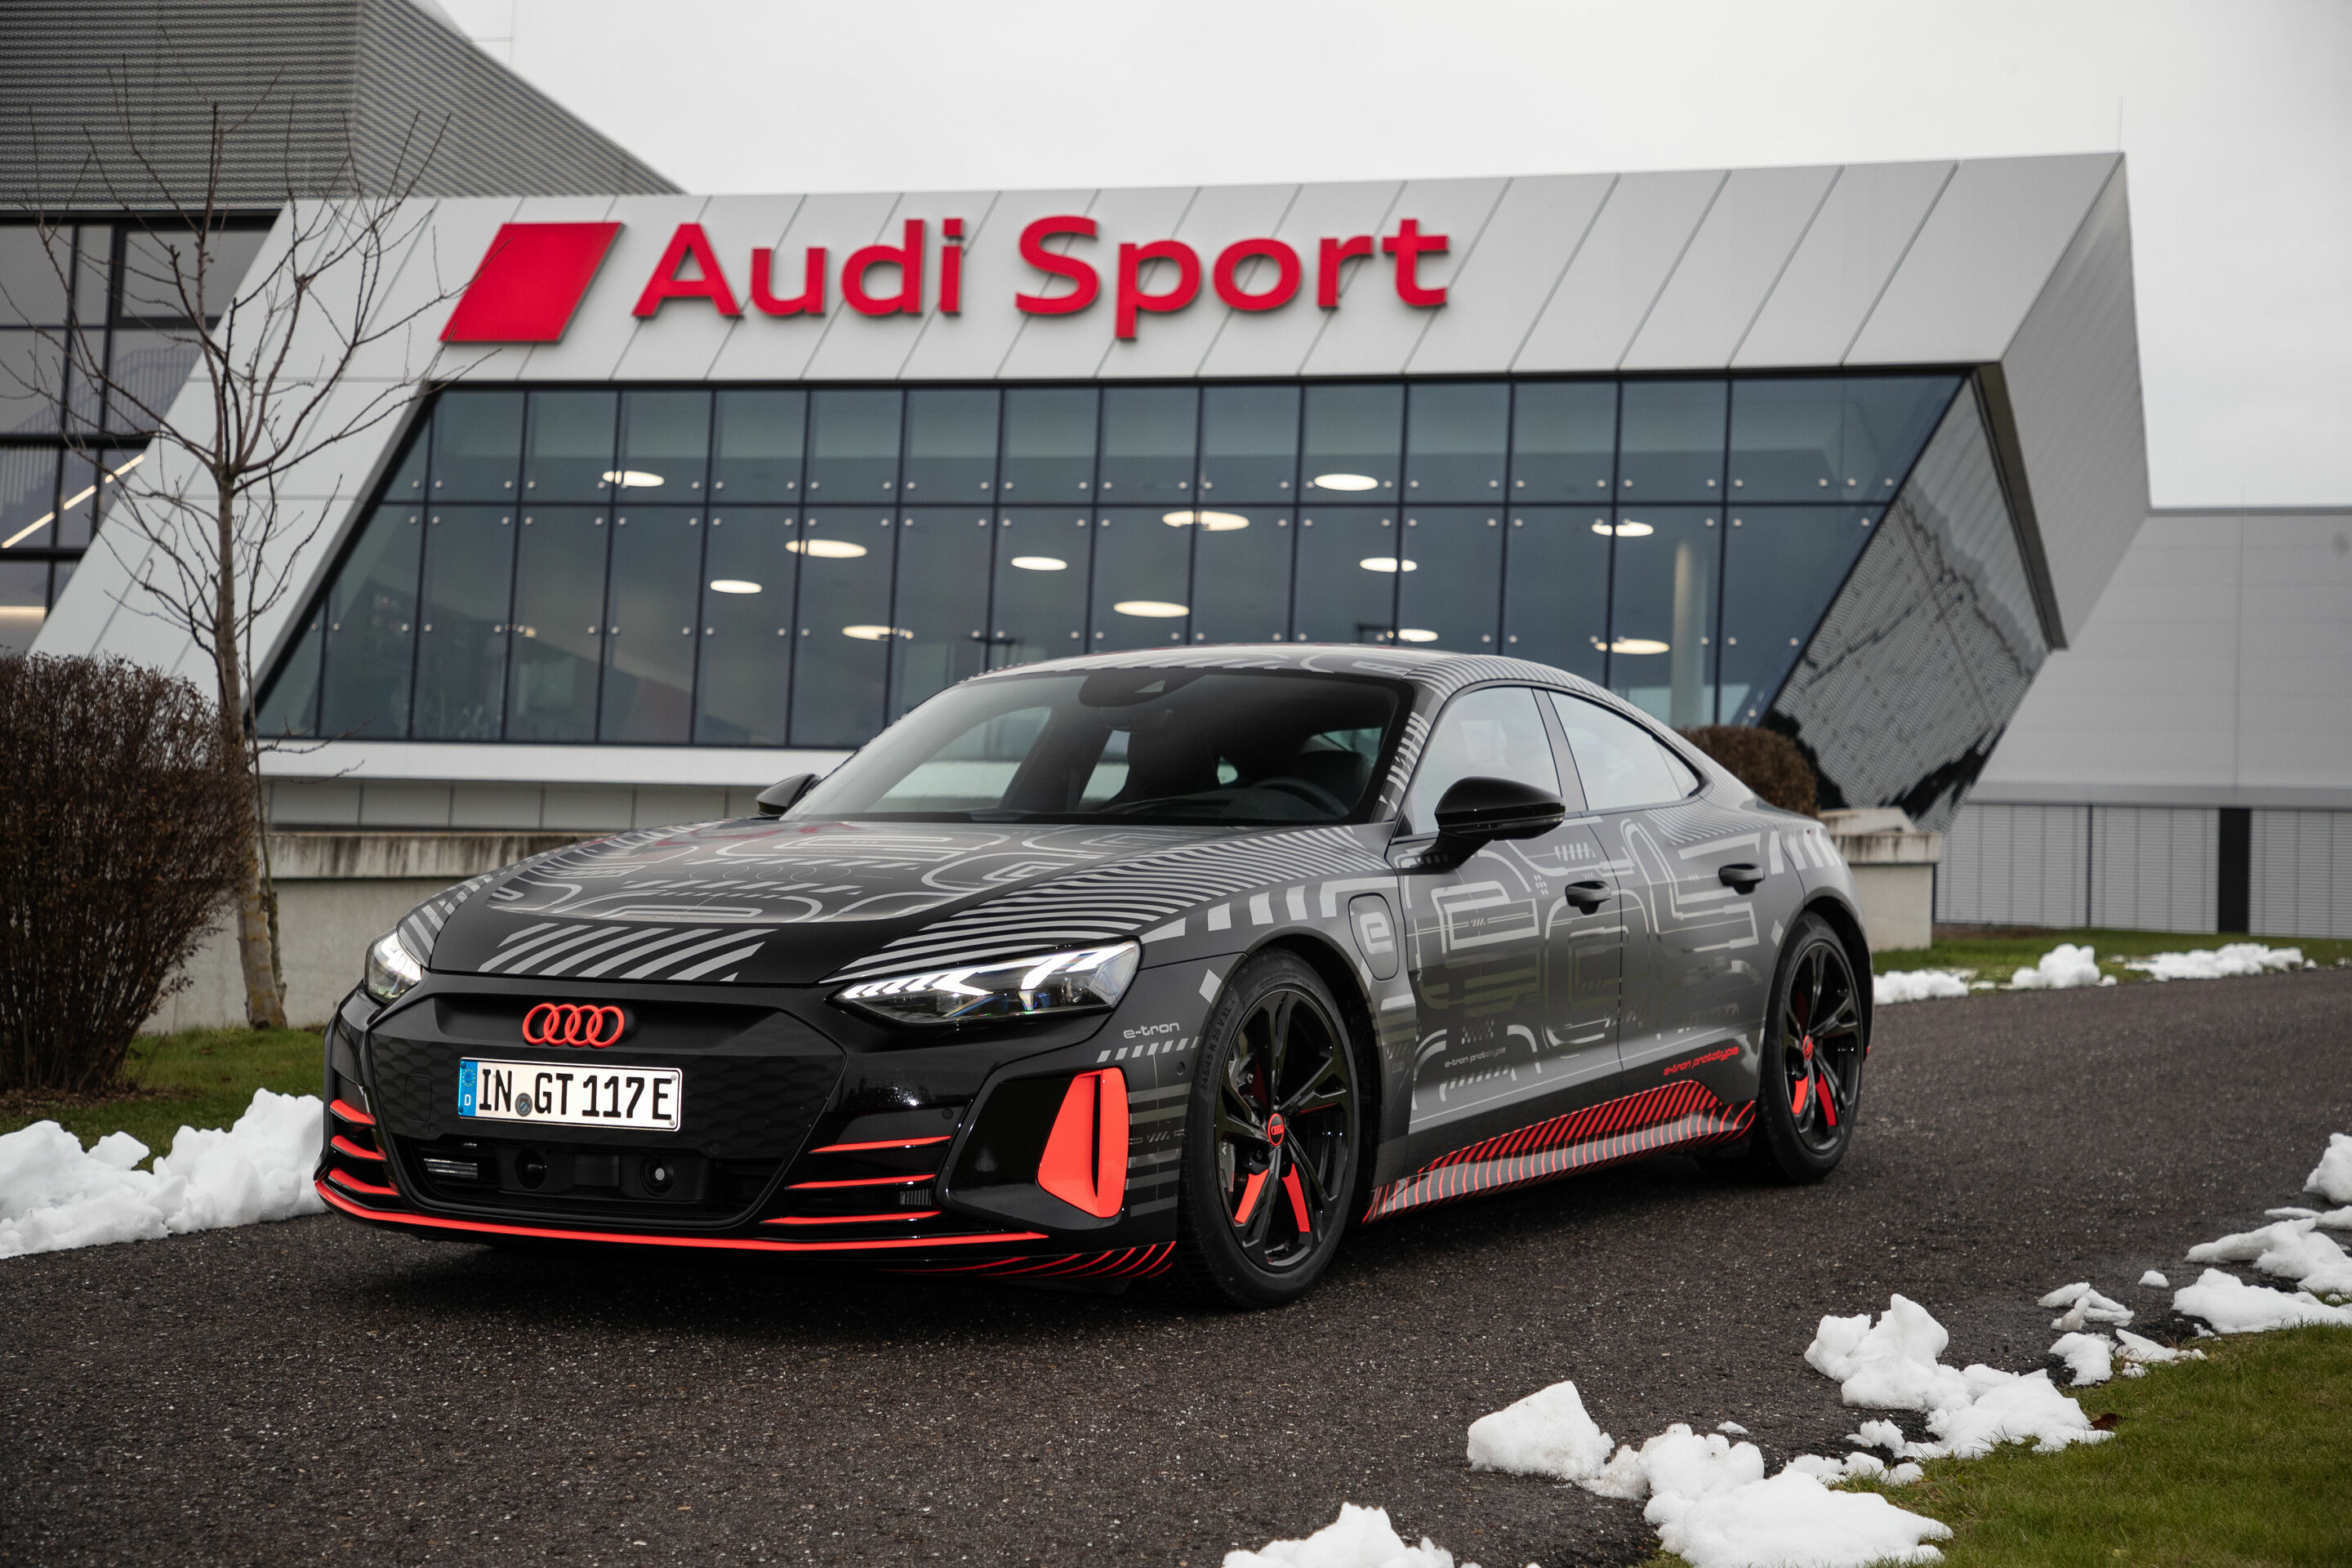 Audi e-tron GT enters series production: Carbon-neutral production begins at the Böllinger Höfe